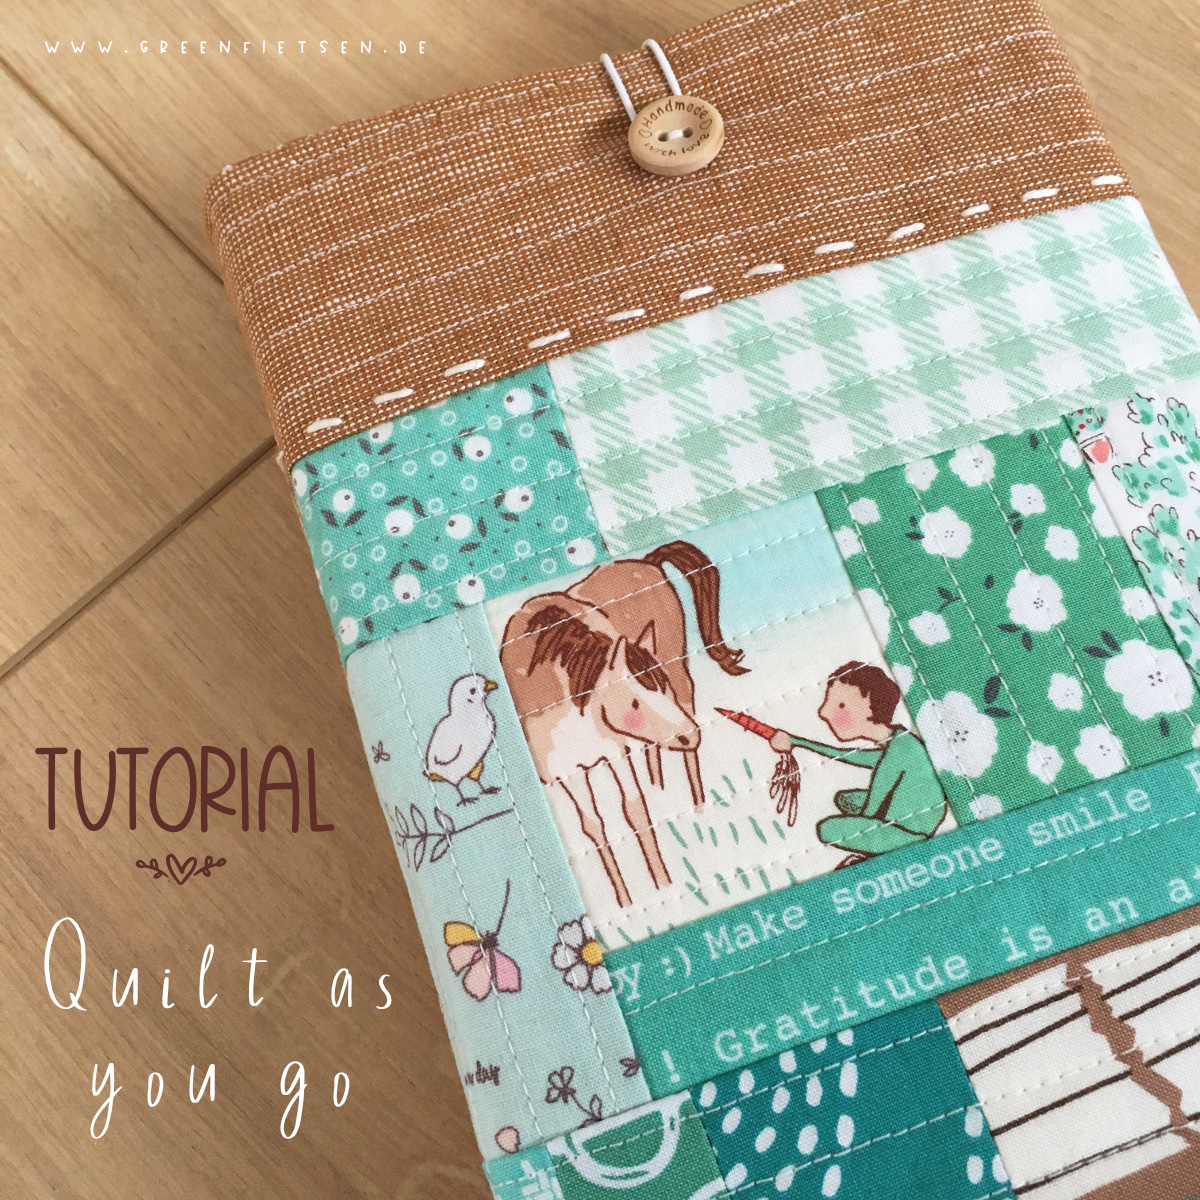 Tutorial - Quilt as you go